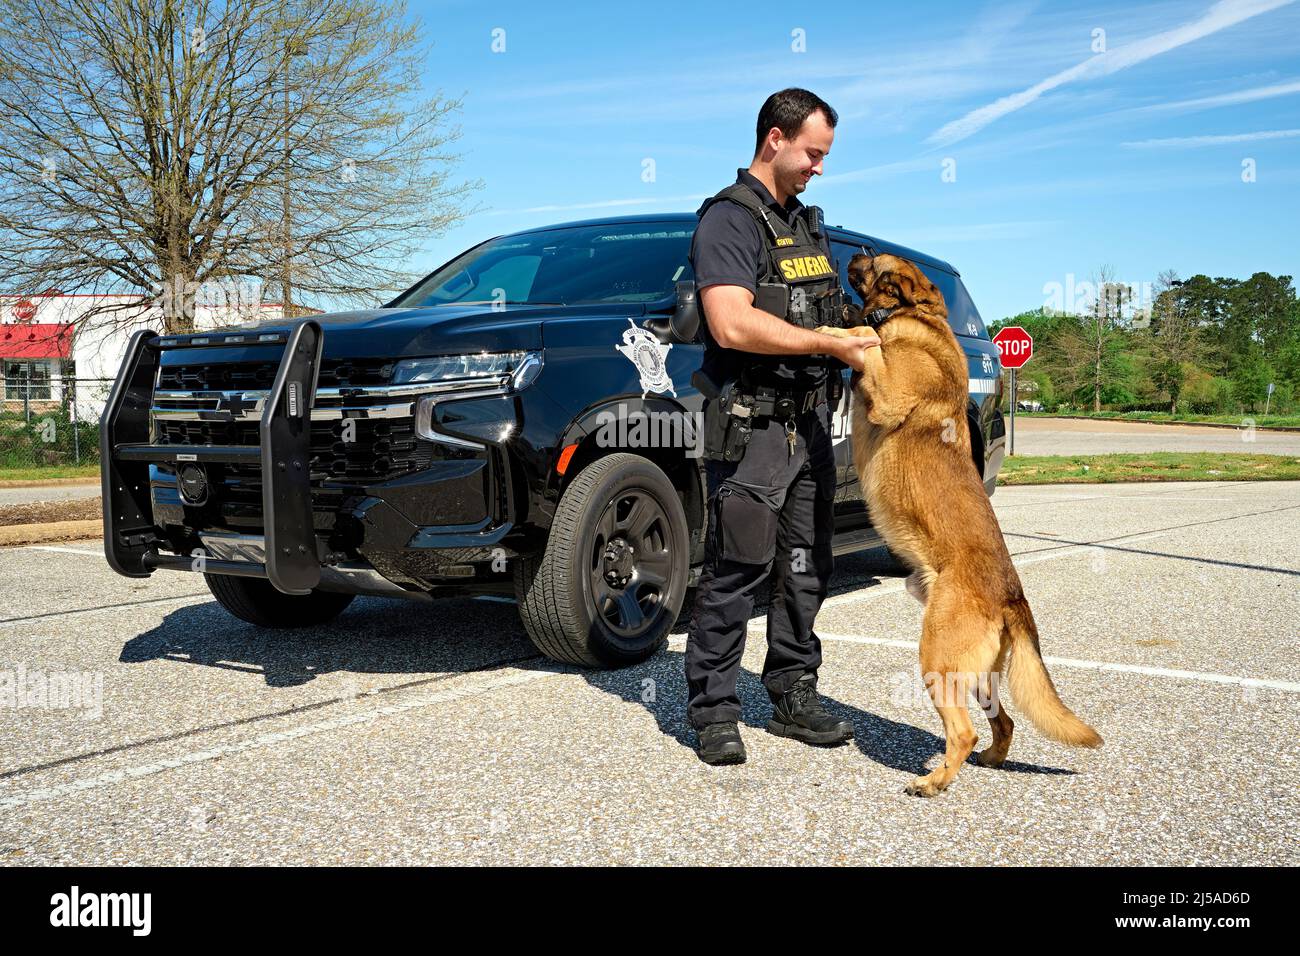 Police de police K-9 officier ou shérif adjoint K-9 avec son chien de police K-9 devant un croiseur de police SUV à Montgomery Alabama, États-Unis. Banque D'Images